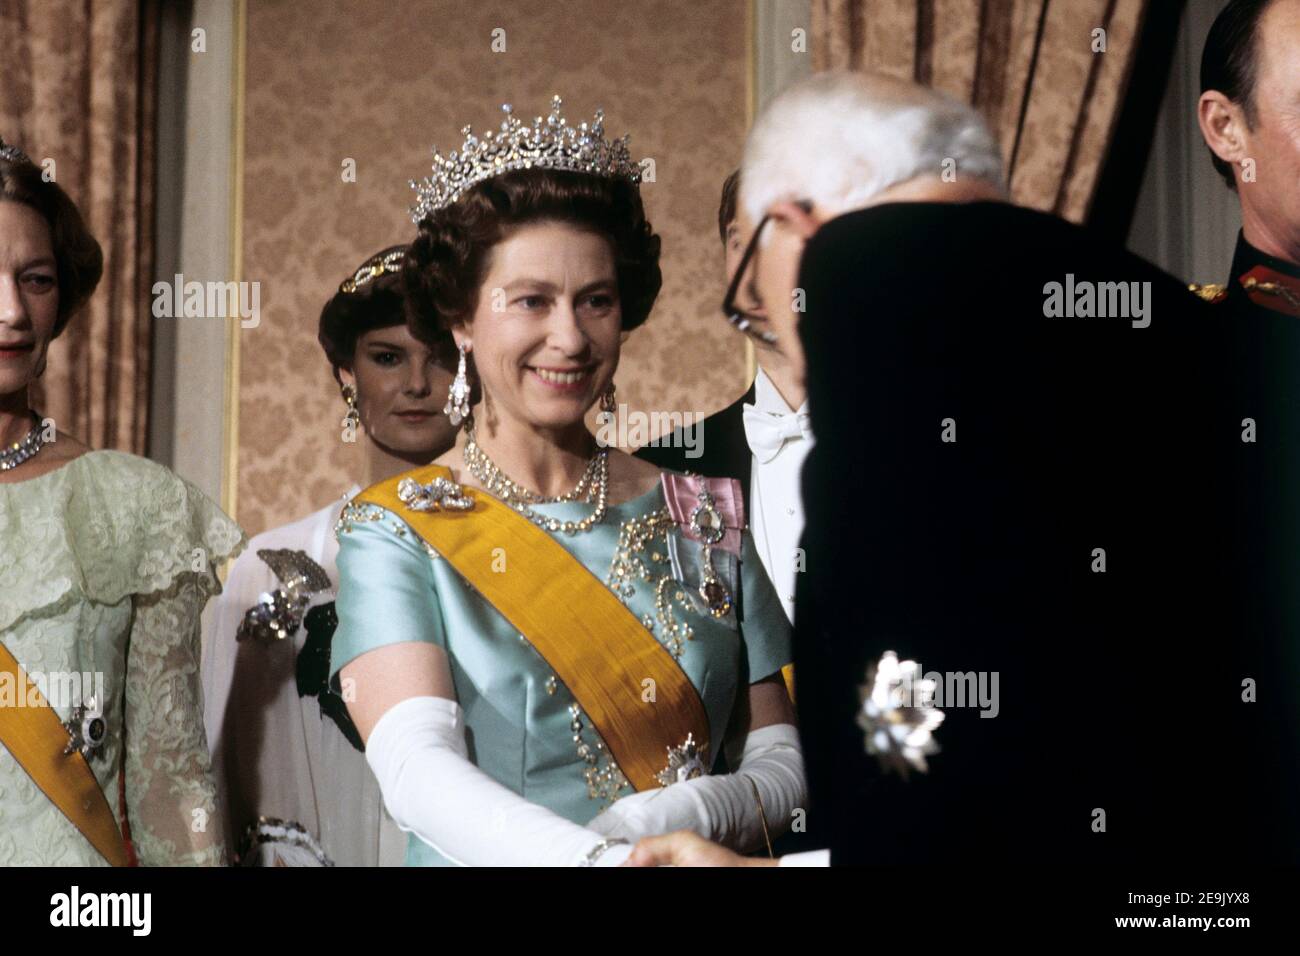 File foto datata 11/11/76 della Regina Elisabetta II che incontra gli ospiti in un banchetto tenuto dal Granduca Jean di Lussemburgo. La Regina regnerà come monarca per 69 anni il sabato. Foto Stock